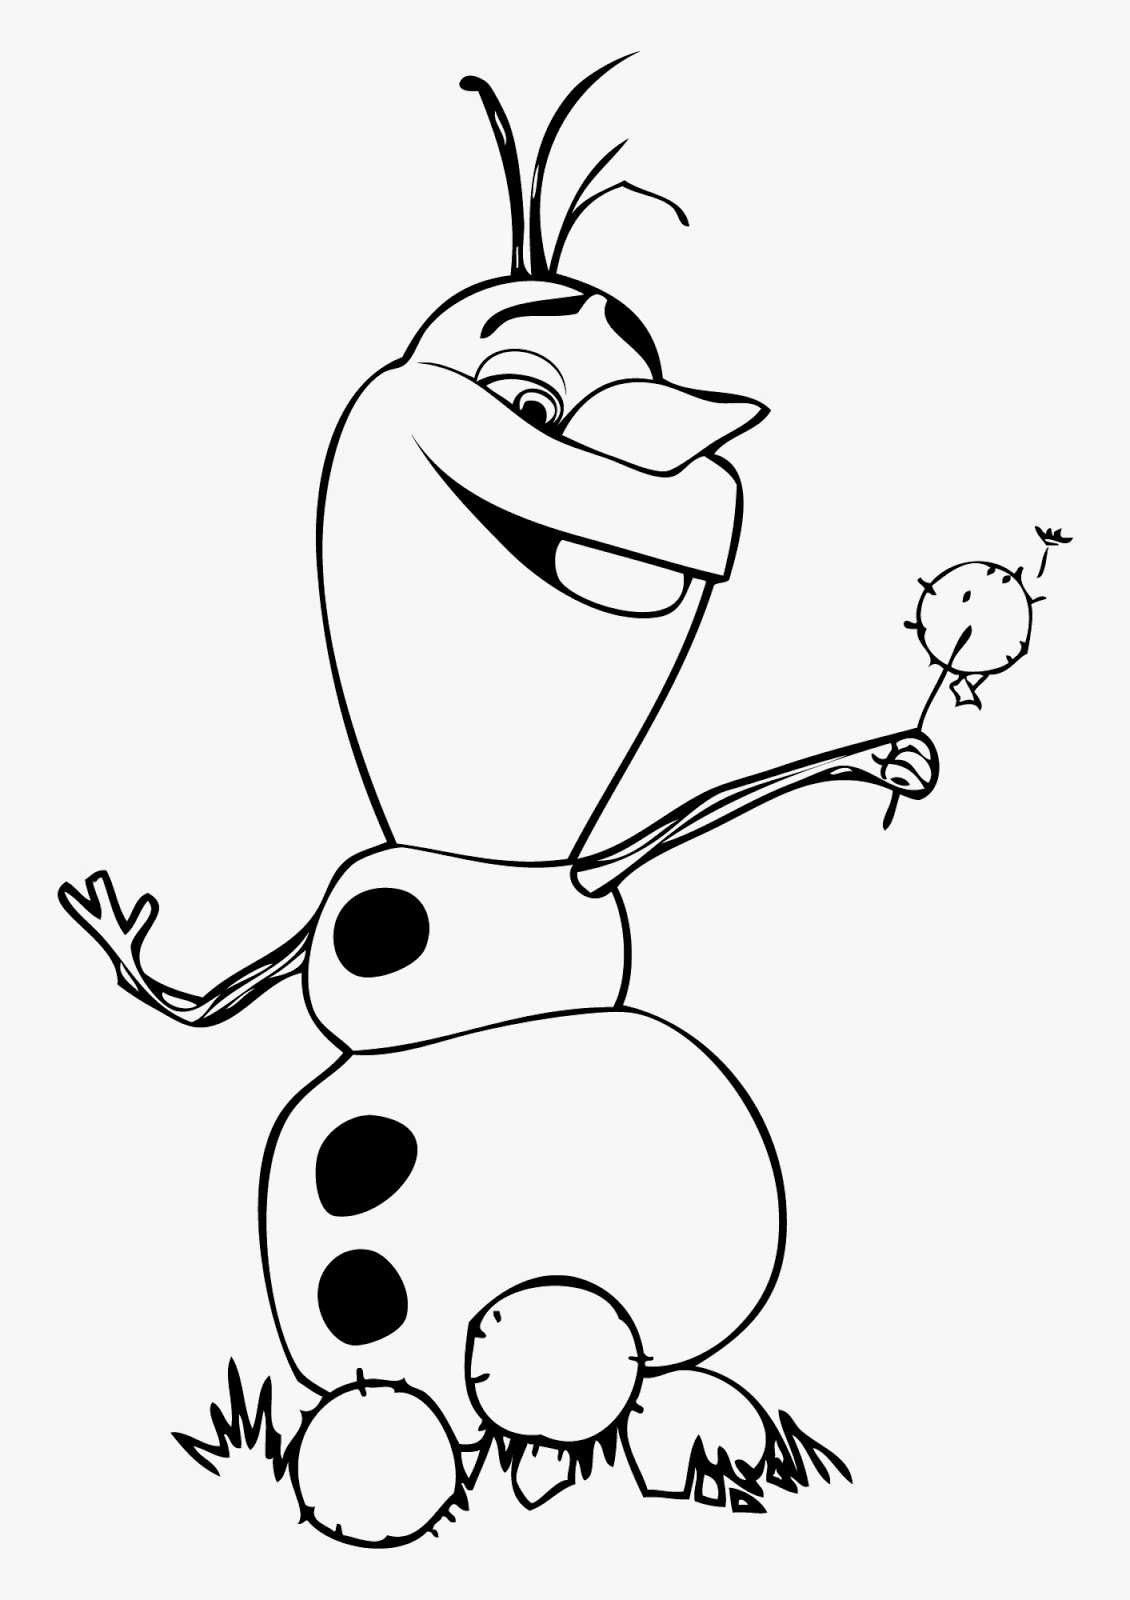 Olaf com cabecinha de vovo